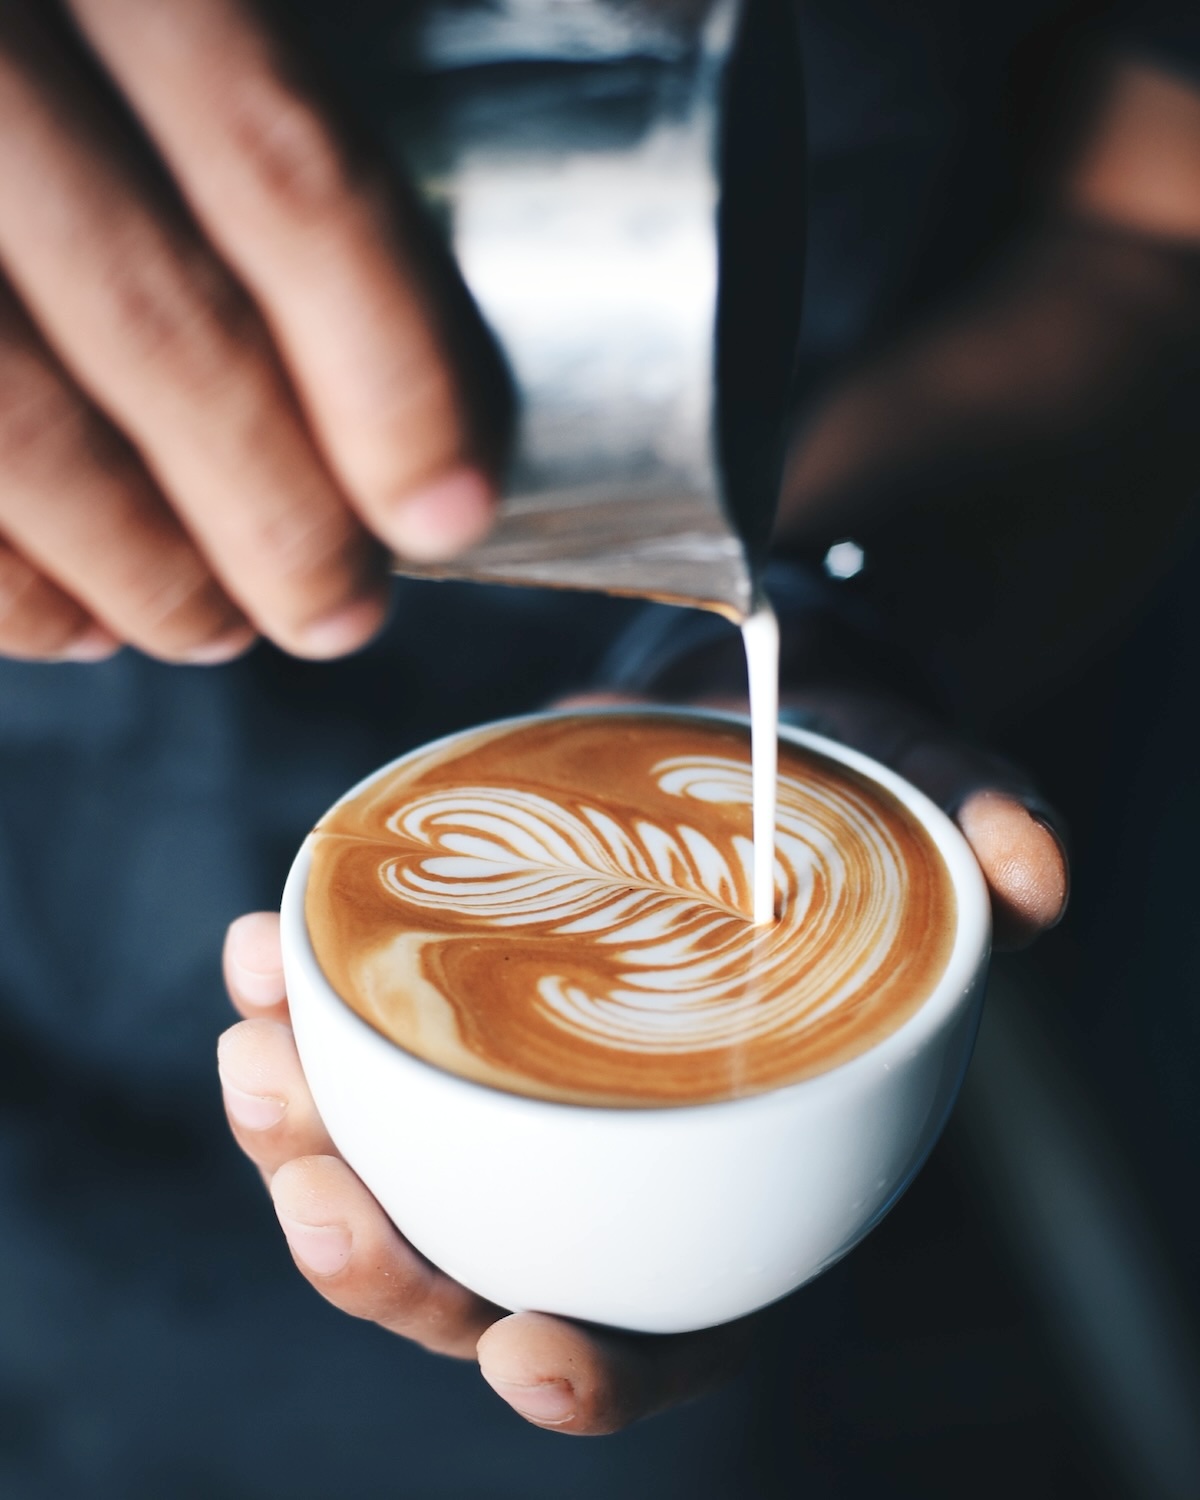 Latte art (c) Coffee Lover shutterstock